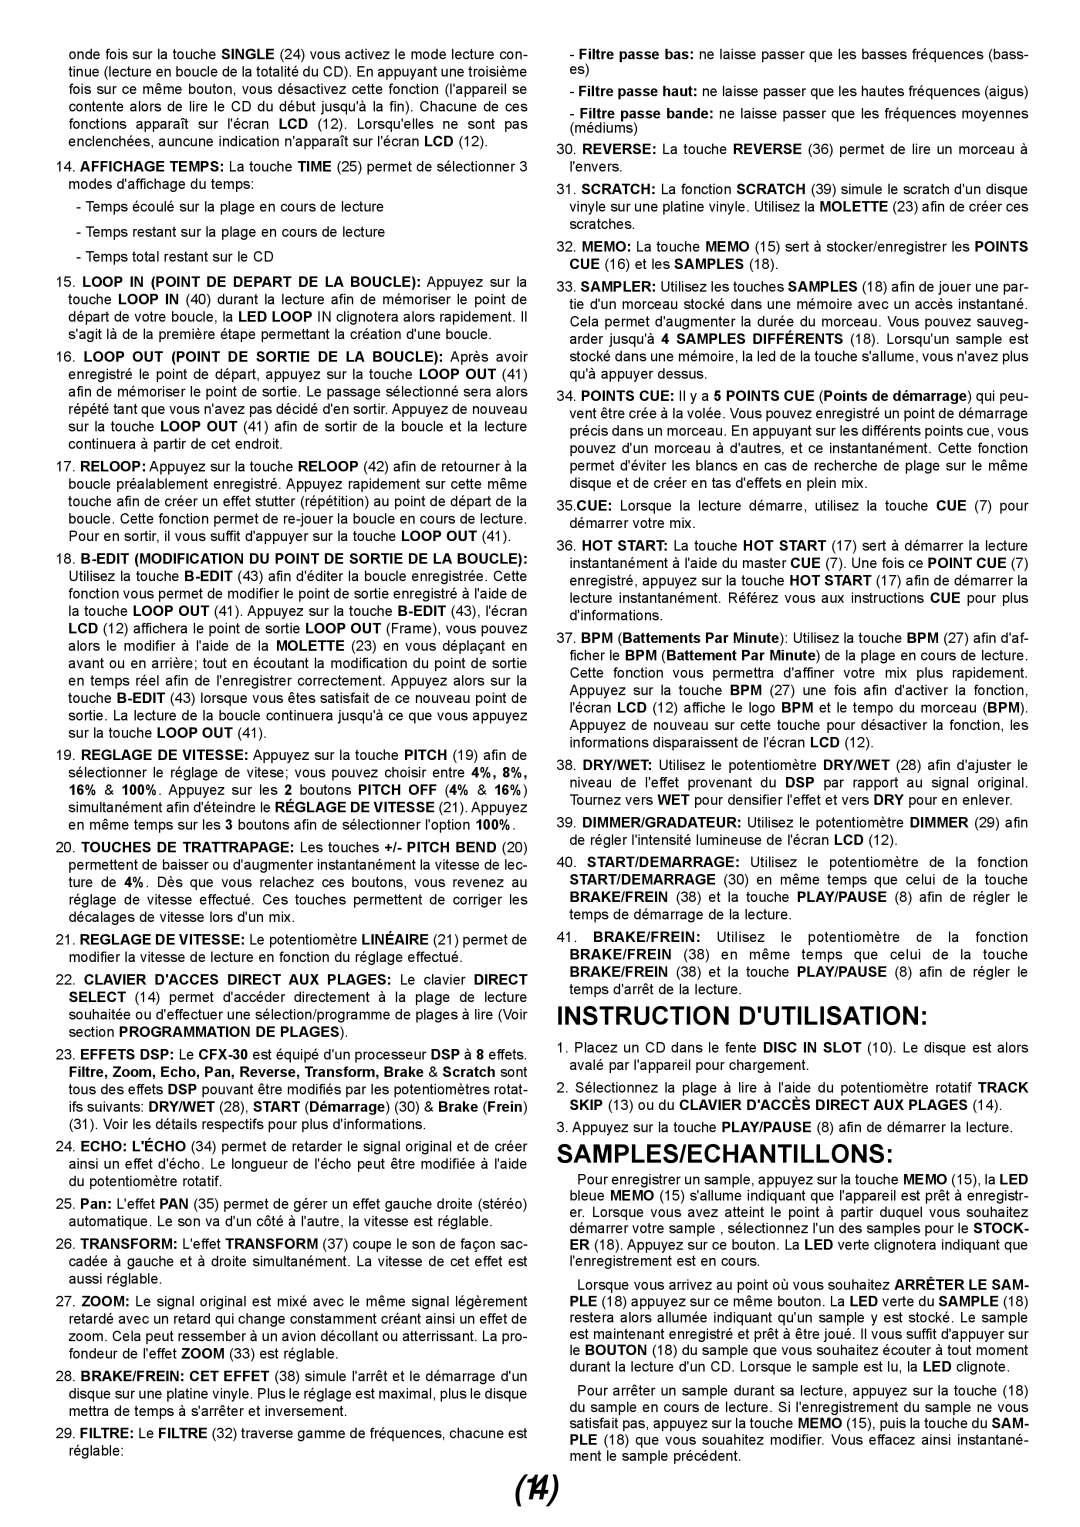 Gemini CFX-30 manual Instruction Dutilisation, Samples/Echantillons 